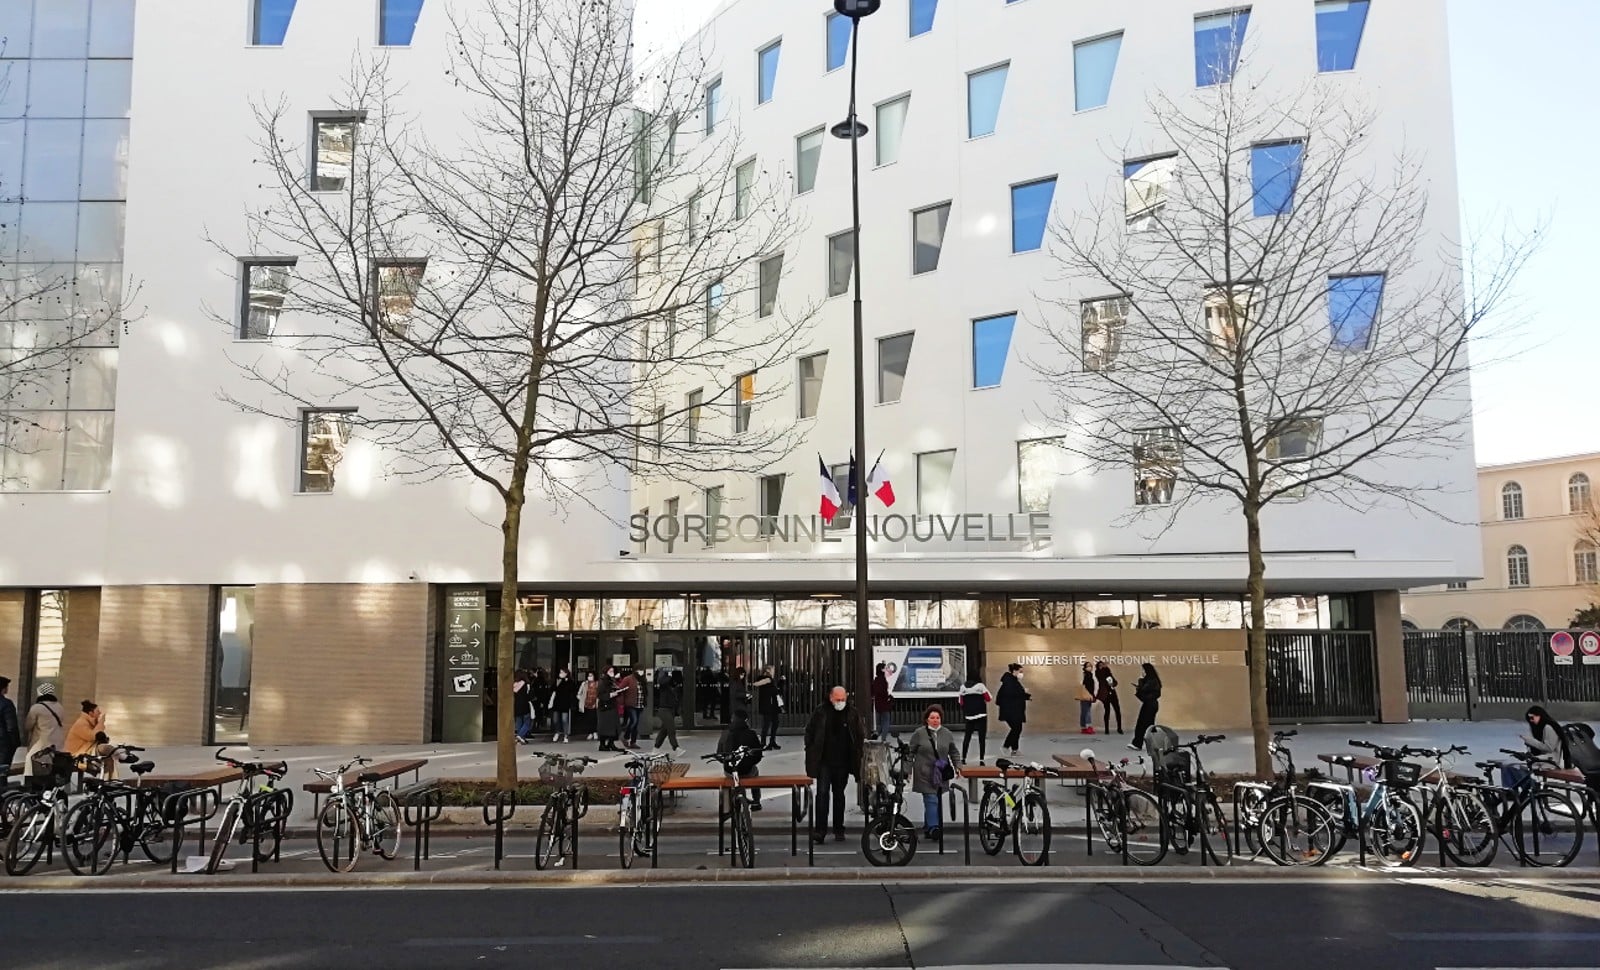 Nouveau bastion du Hamas au sein de Paris III-Sorbonne Nouvelle